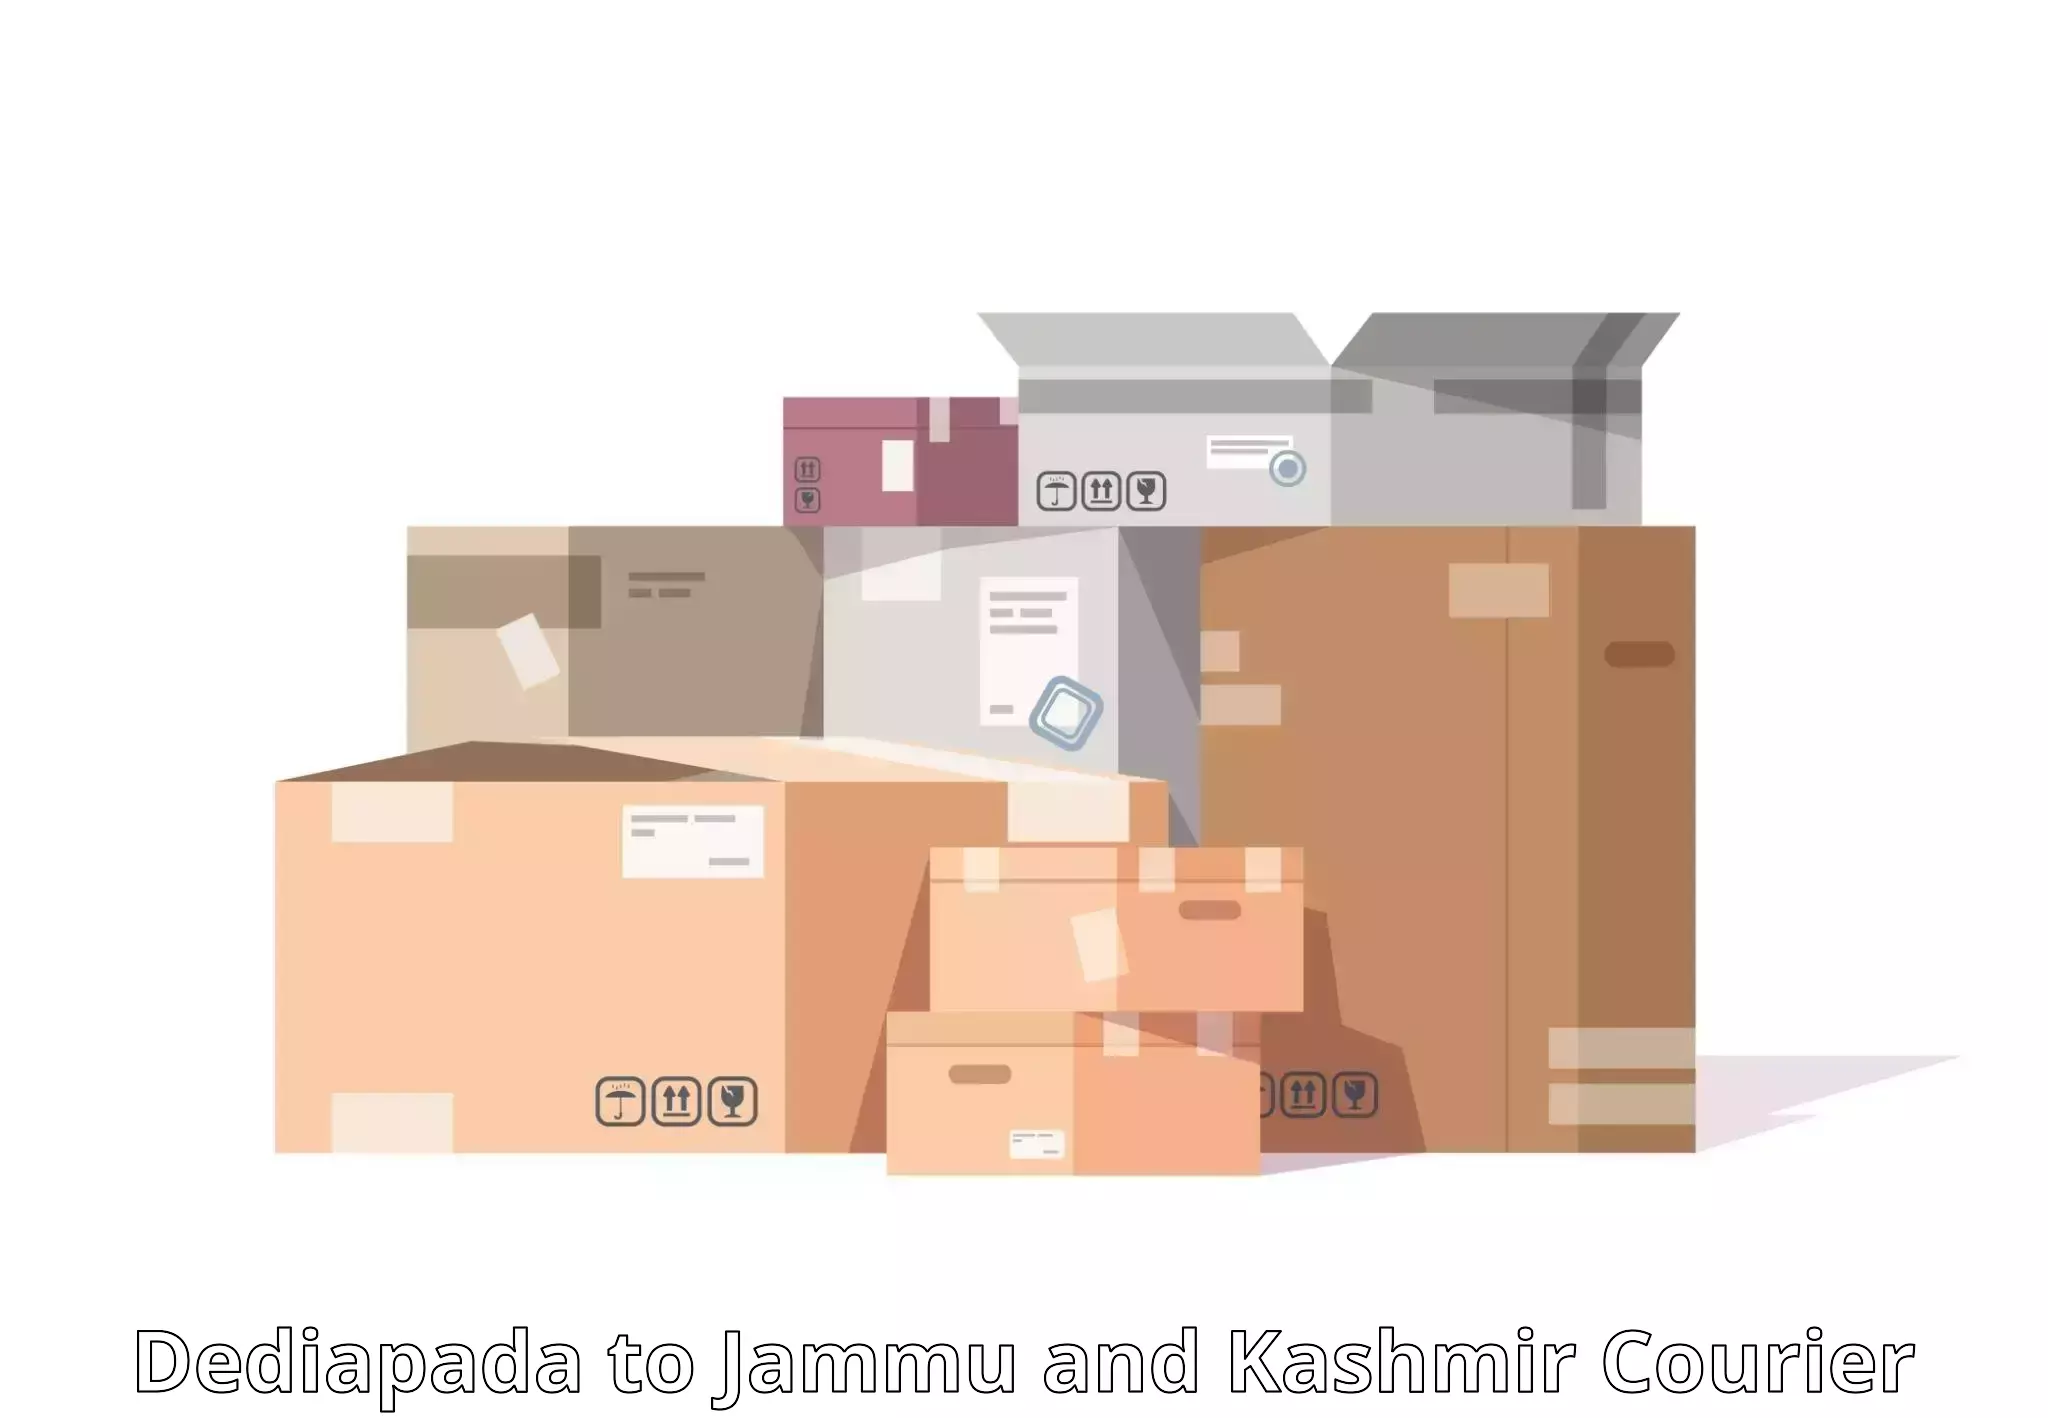 Customer-centric shipping Dediapada to NIT Srinagar